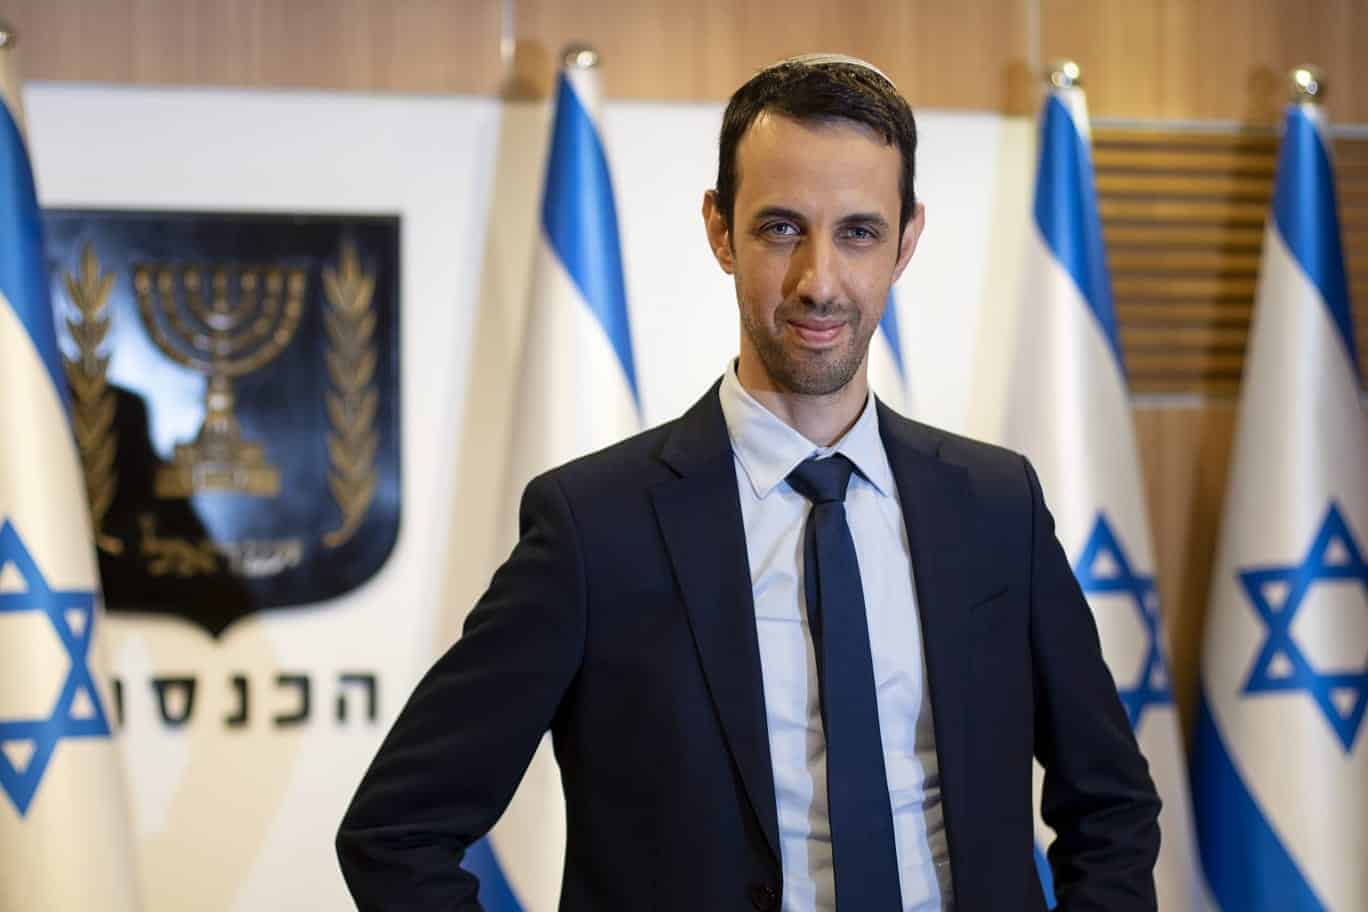 ח"כל אריאל קלנר, נבחר שוב לייצג את חיפה בכנסת ישראל | צפו